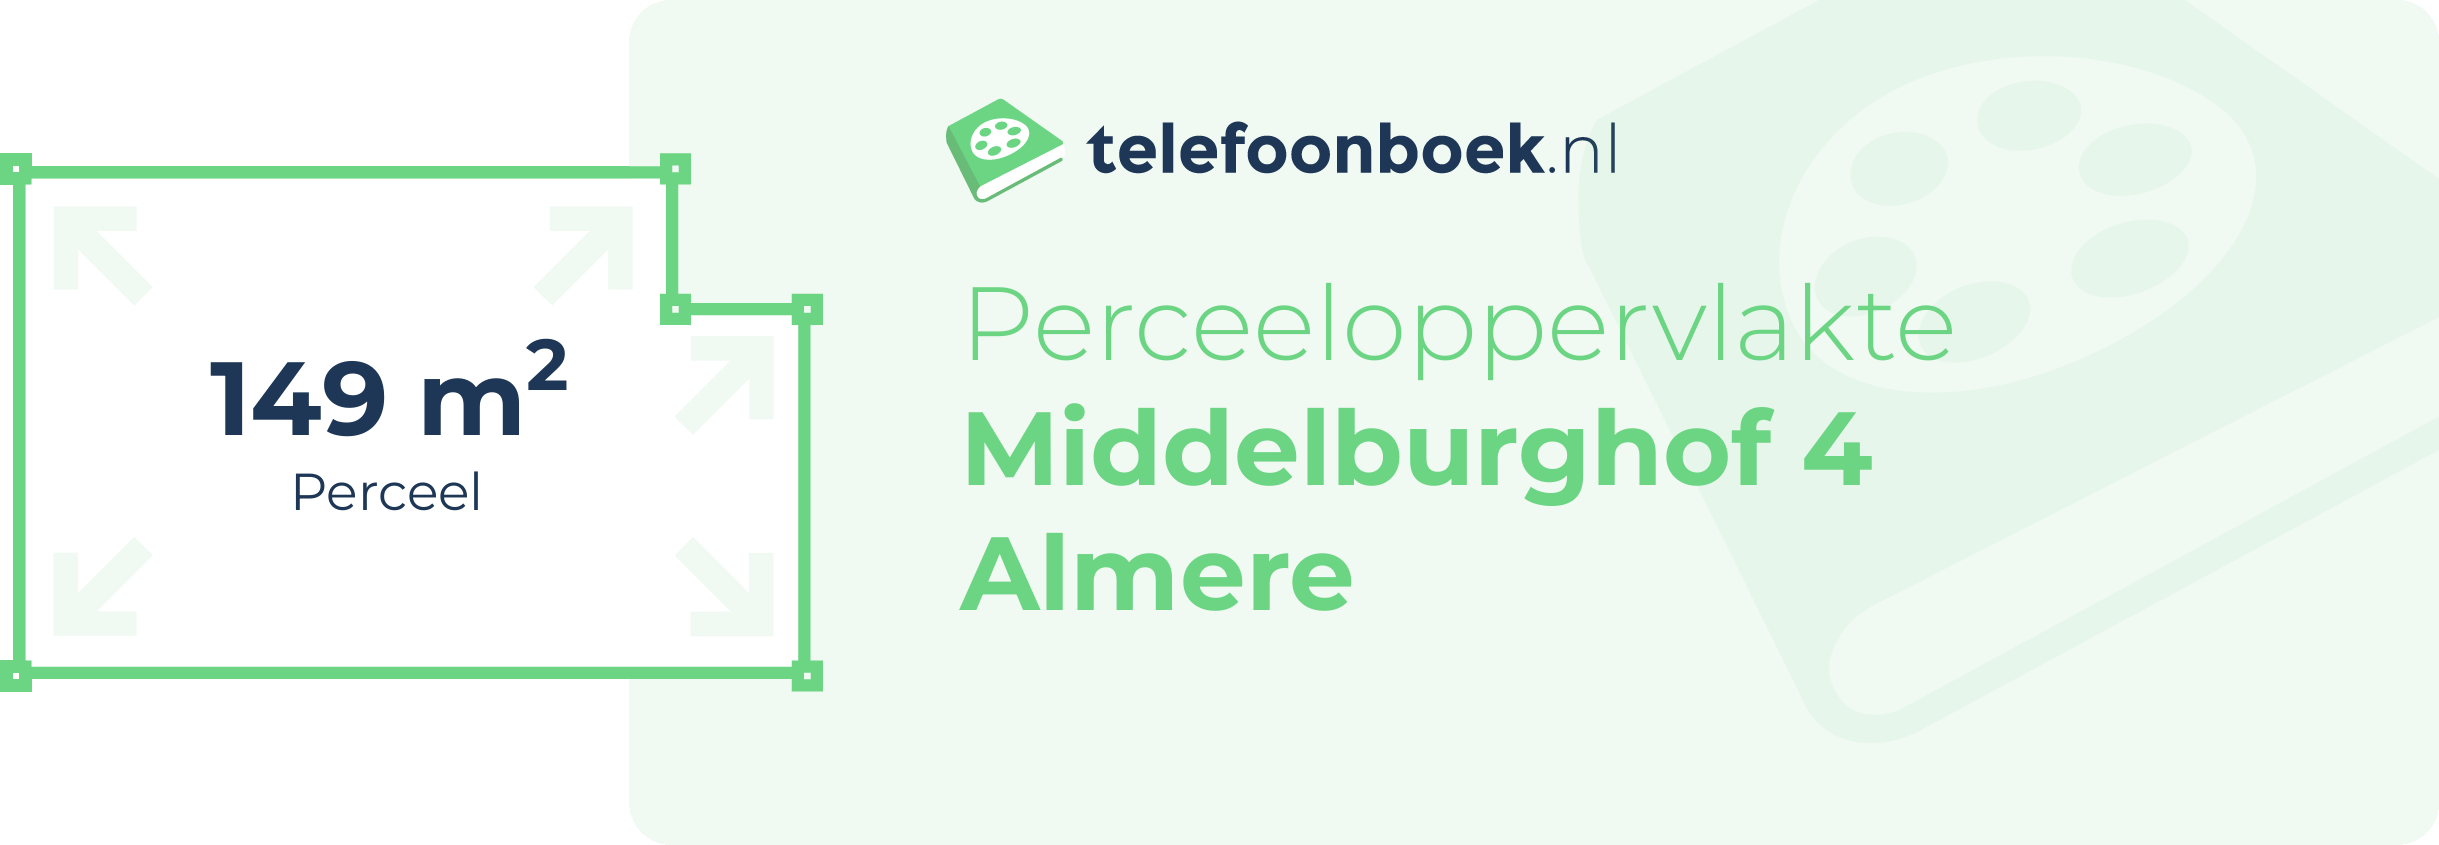 Perceeloppervlakte Middelburghof 4 Almere